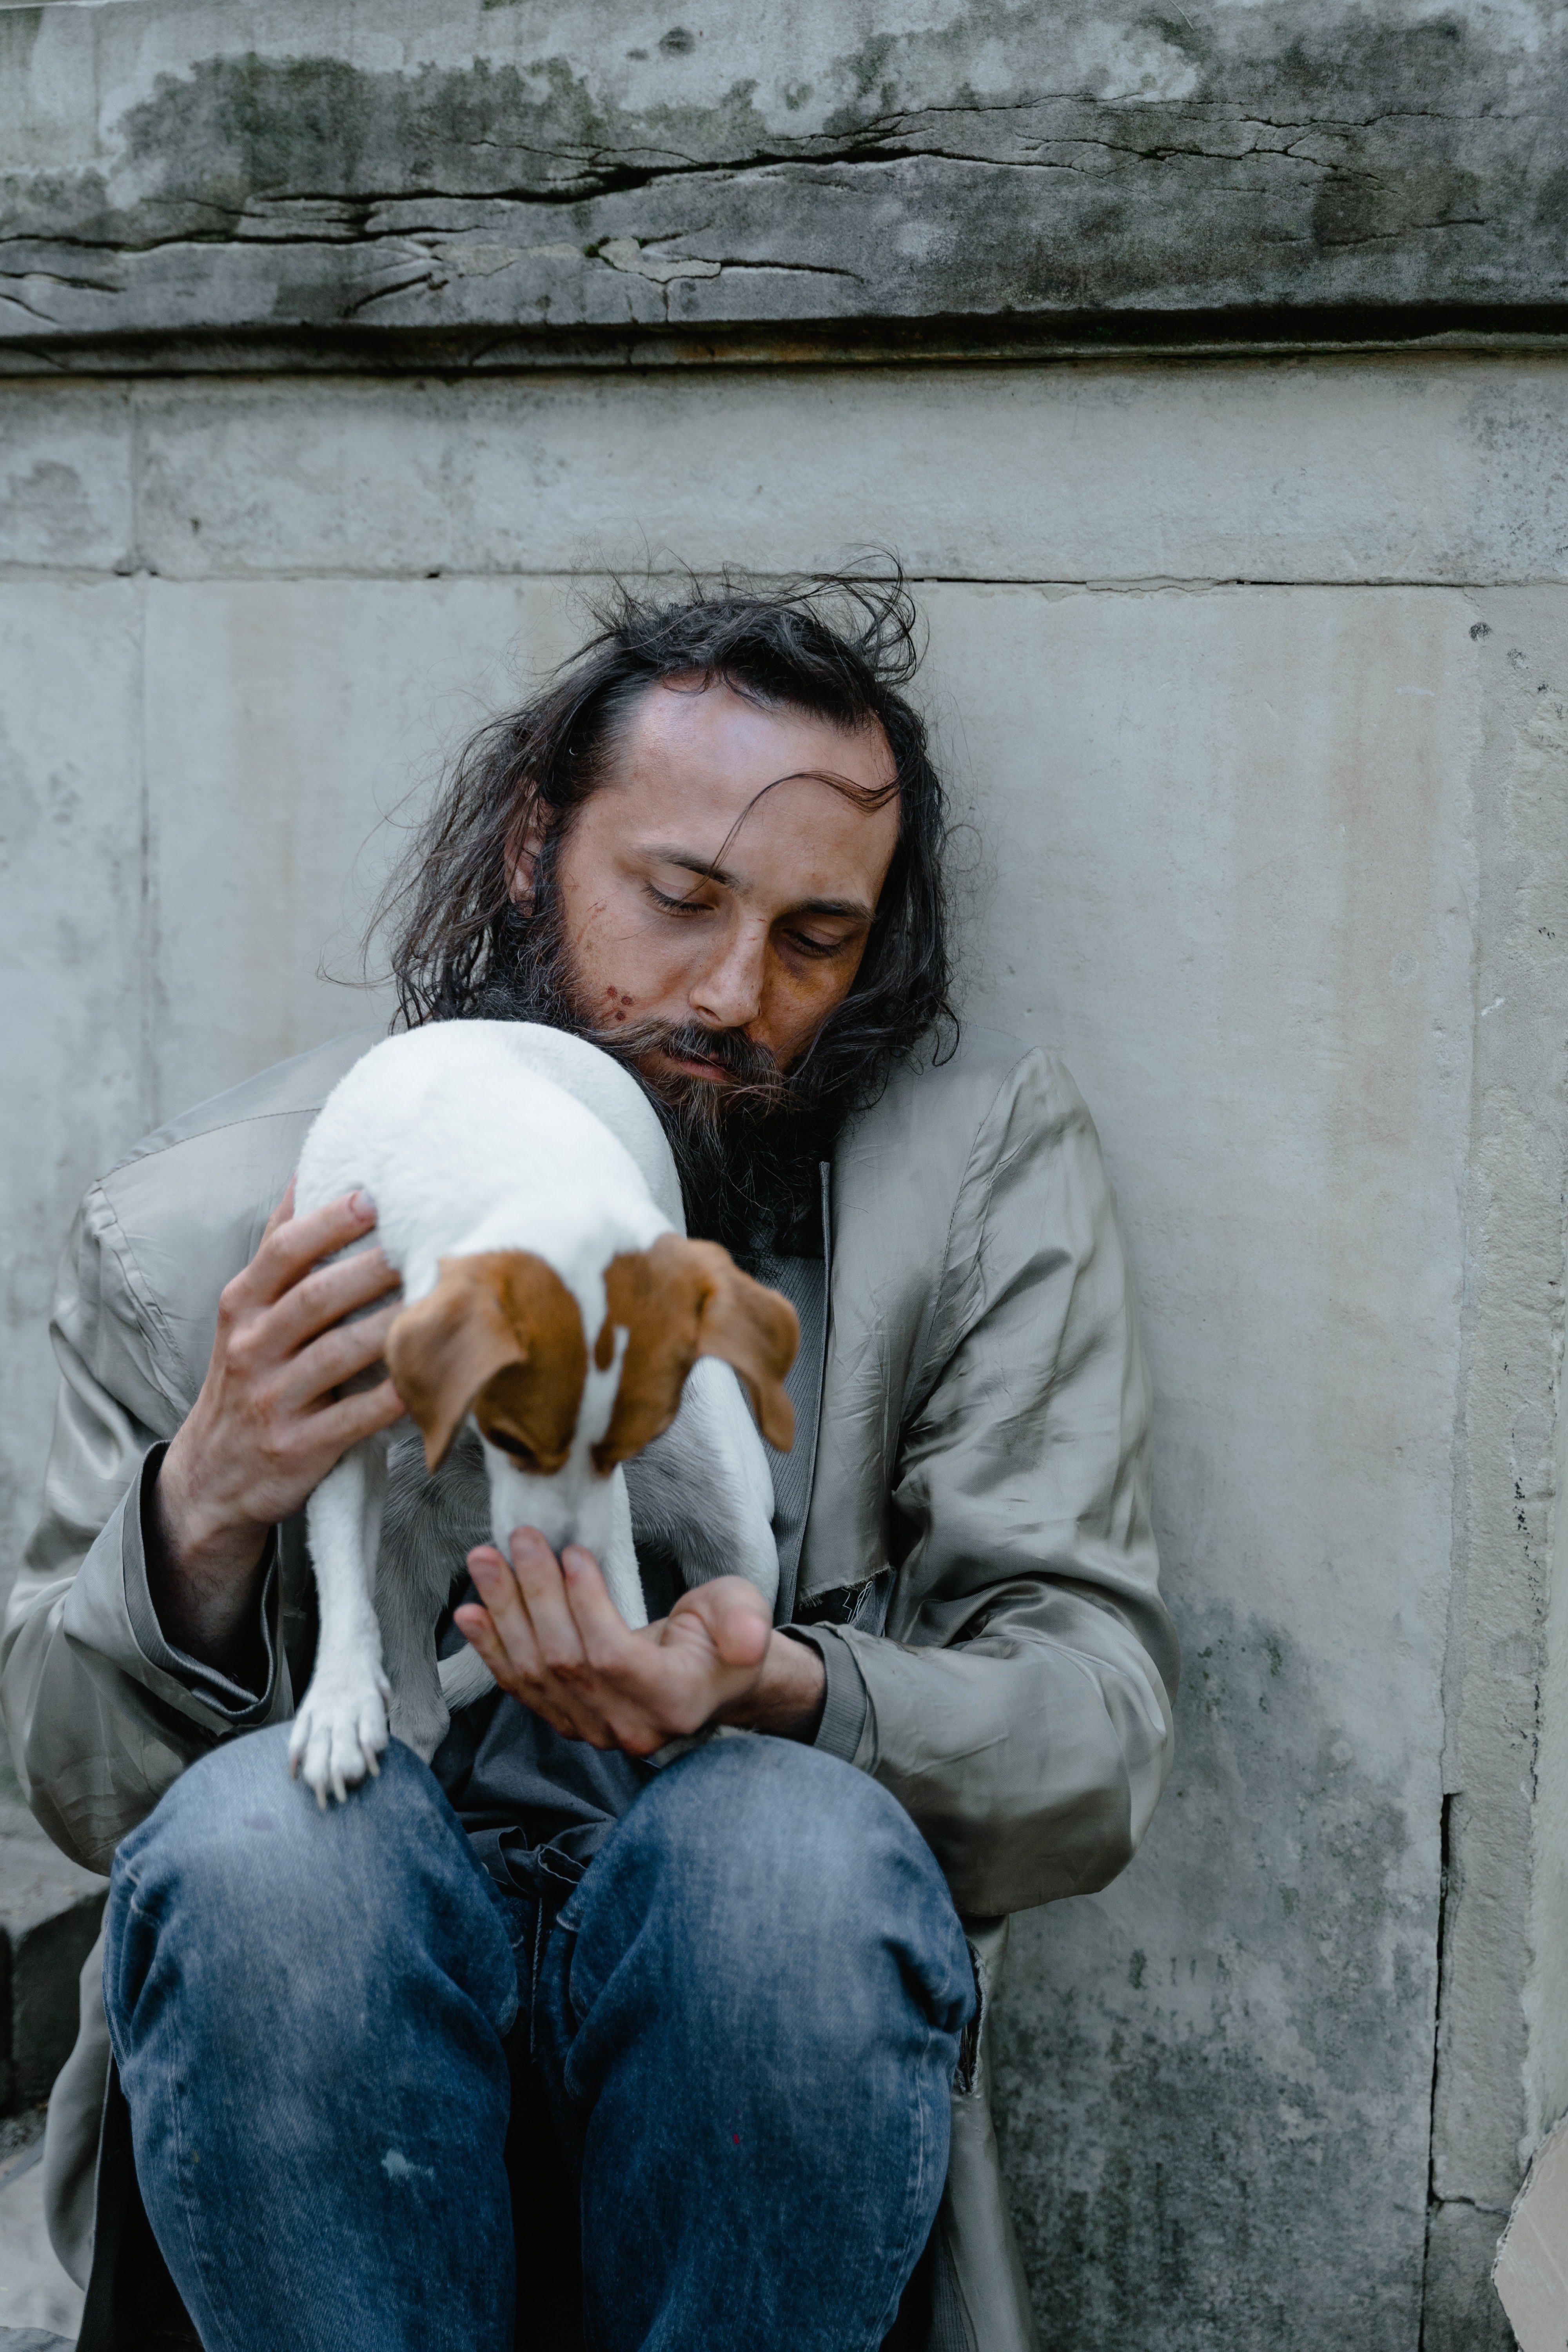 Der Obdachlose teilte den Snack in zwei Hälften und reichte die eine Hälfte dem Hund | Quelle: Pexels